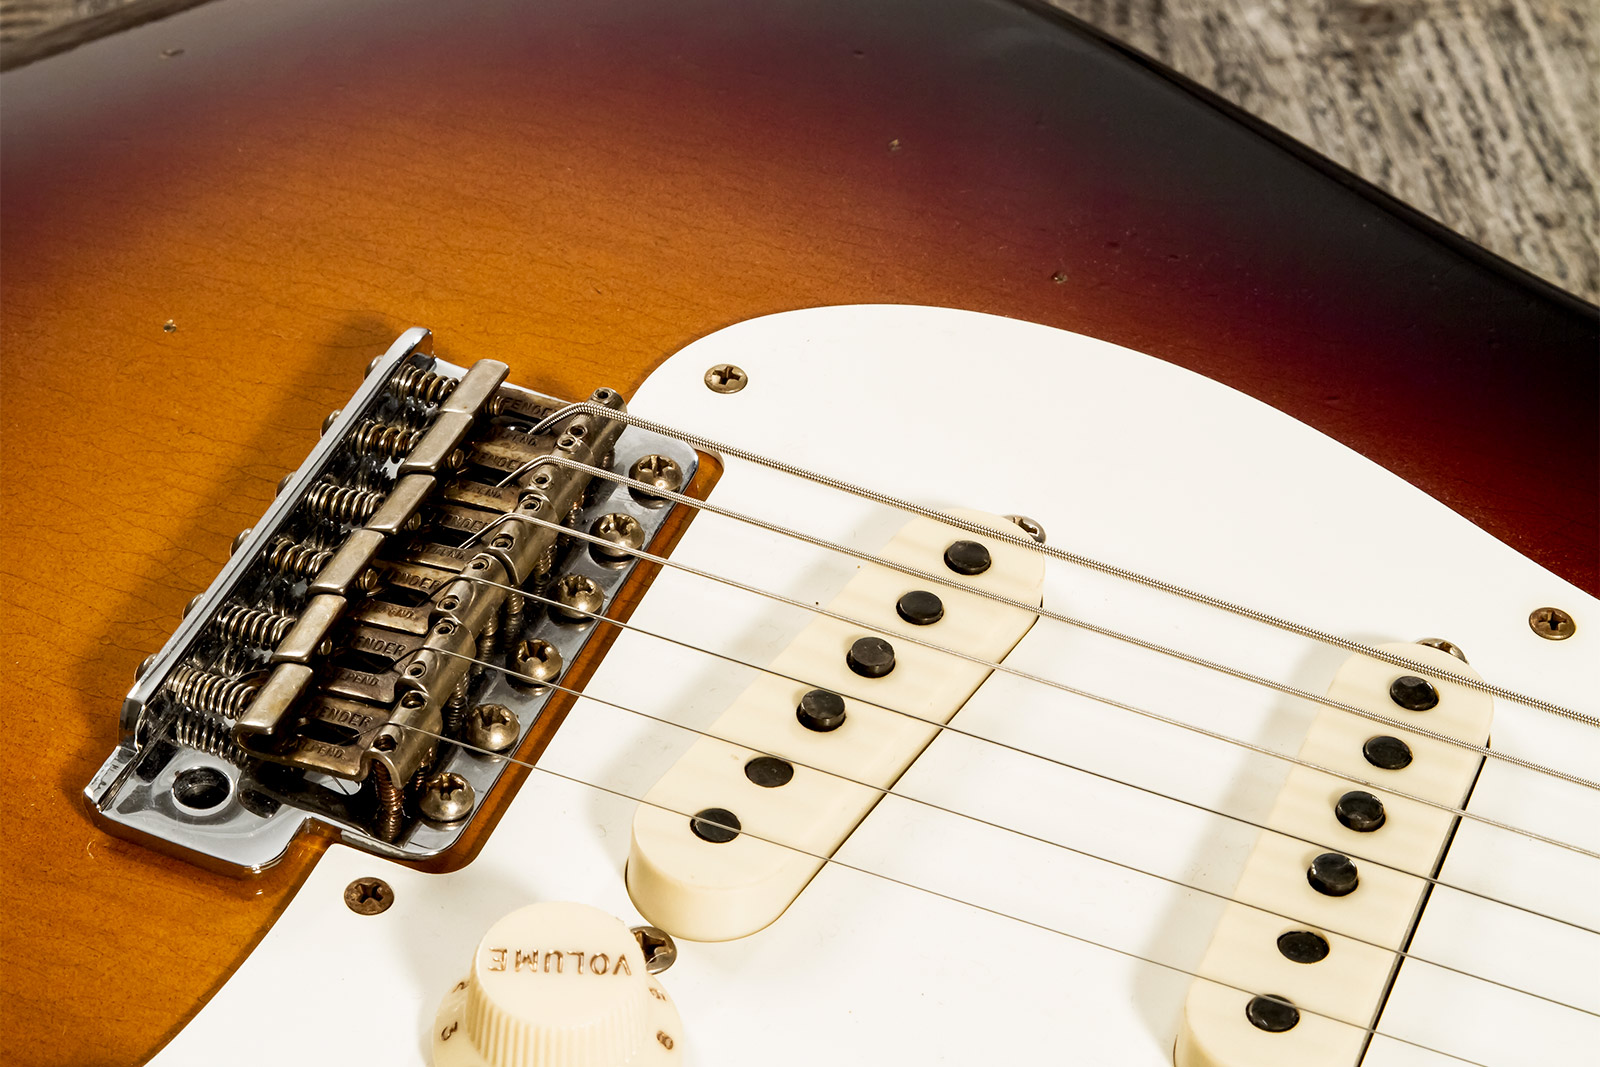 Fender Custom Shop Strat 1957 3s Trem Mn #cz571791 - Relic Wide Fade 2-color Sunburst - Str shape electric guitar - Variation 4